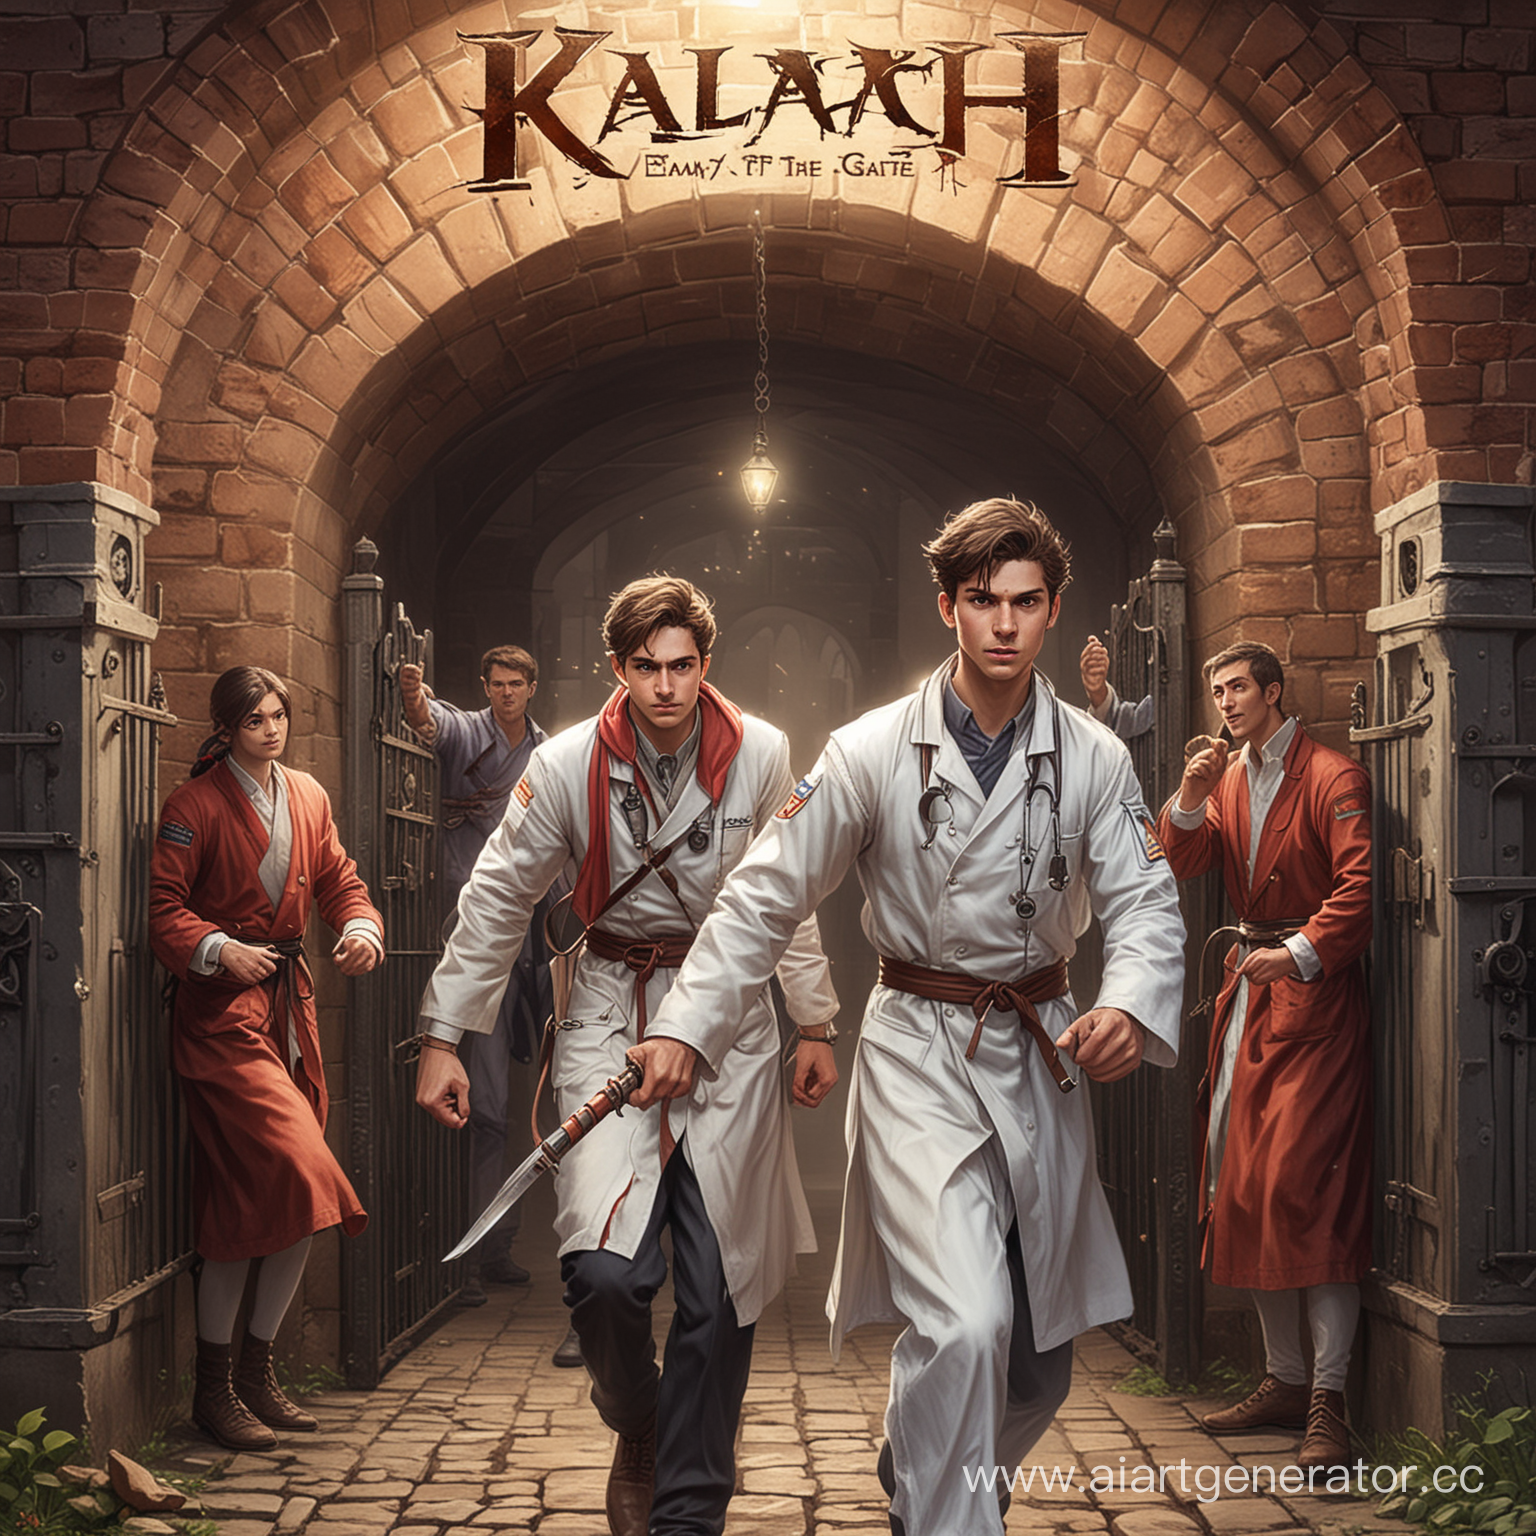 Нарисуй обложку к компьютерной игре "Калач. Враг у ворот". Игра про молодого бойца, который сражается с демонами в костюмах врачей.